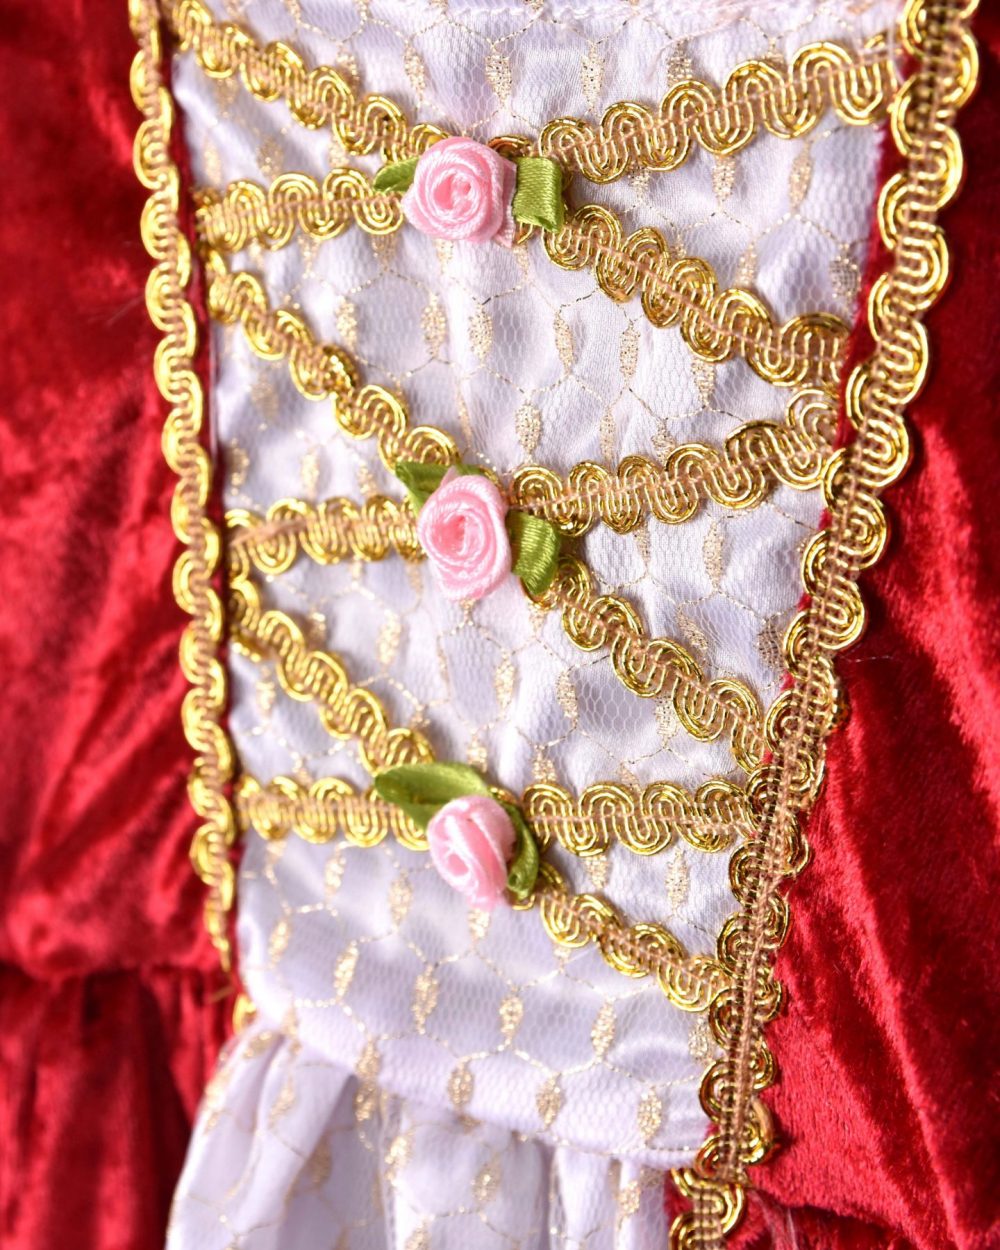 Närbild på en röd prinsessklänning. I bild visas bröstpartiet på klänningen som har en vitt sidenparti, gyllene detaljer och små rosdekorationer i rosa.